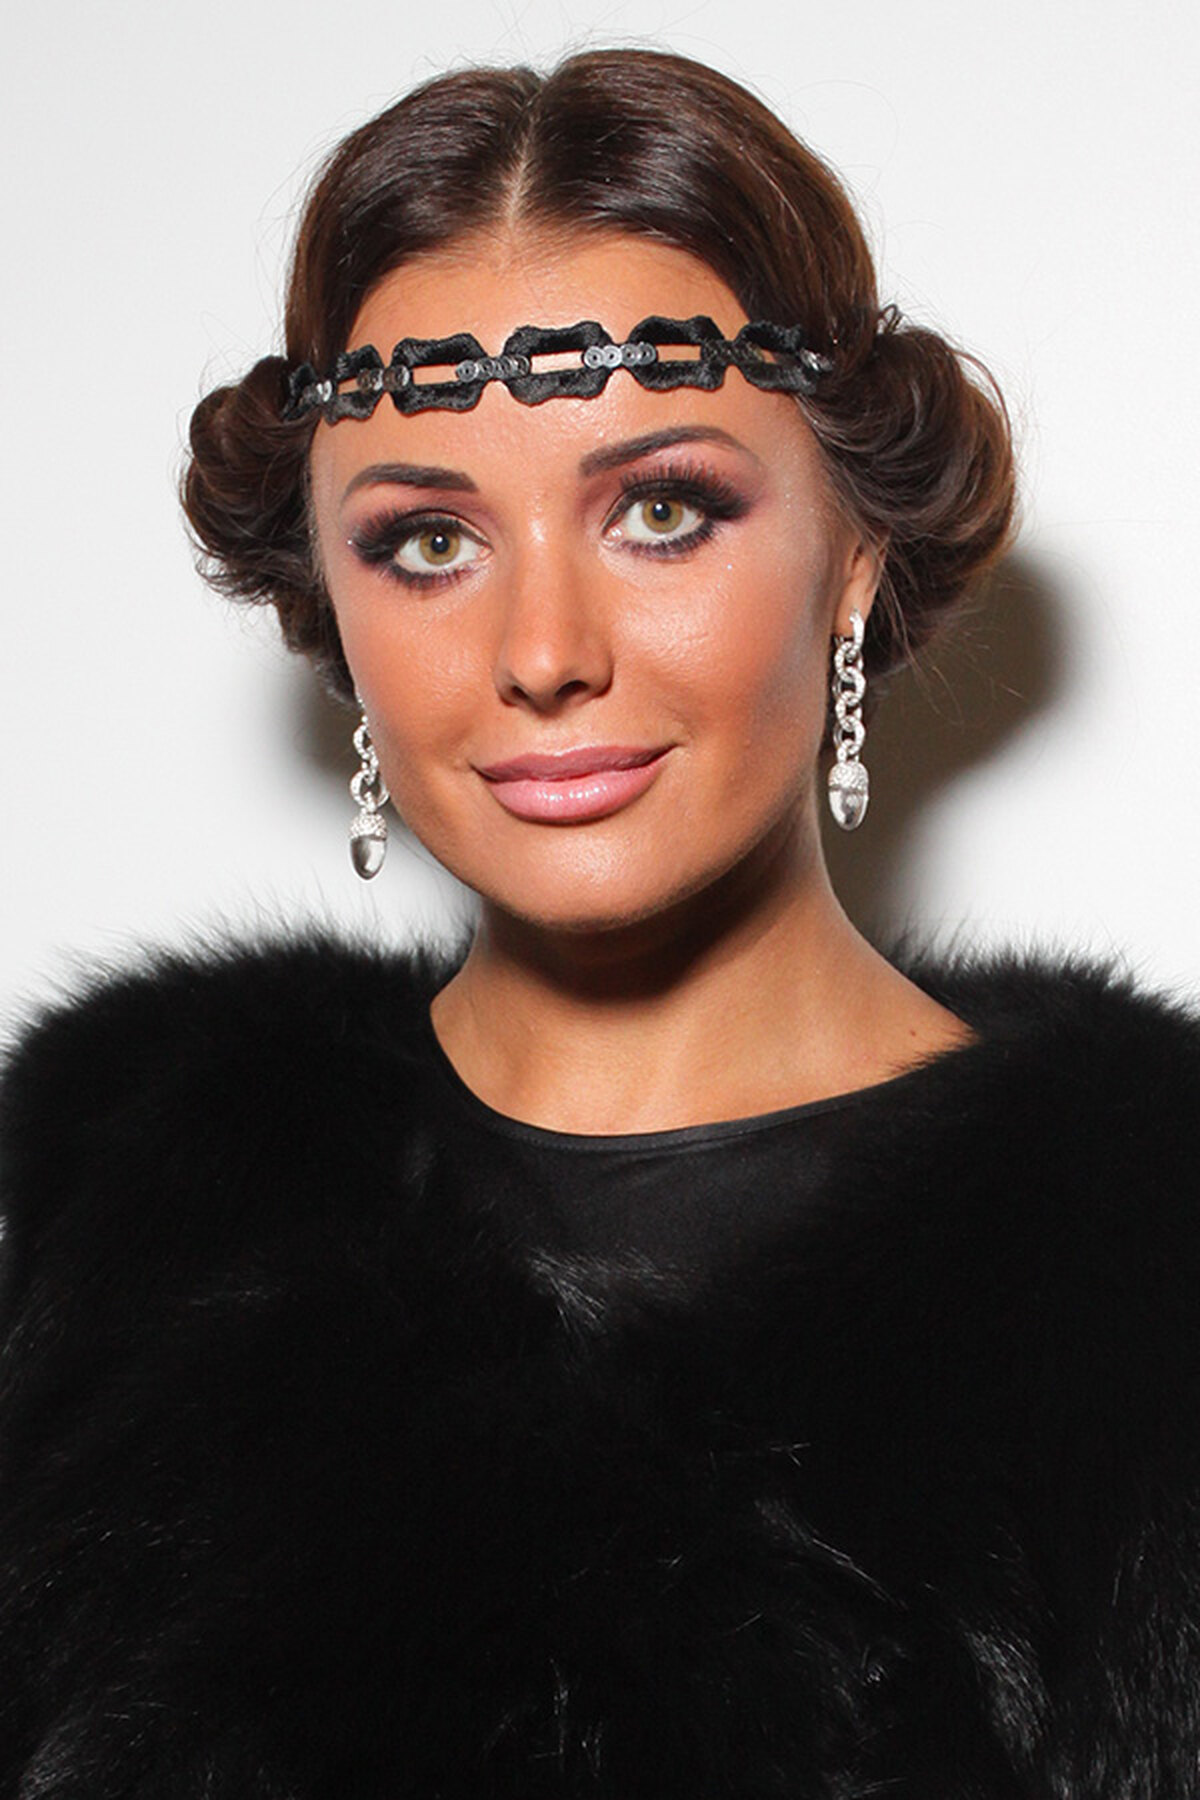 Оксана Федорова, как выглядит и одевается «Мисс Вселенная»